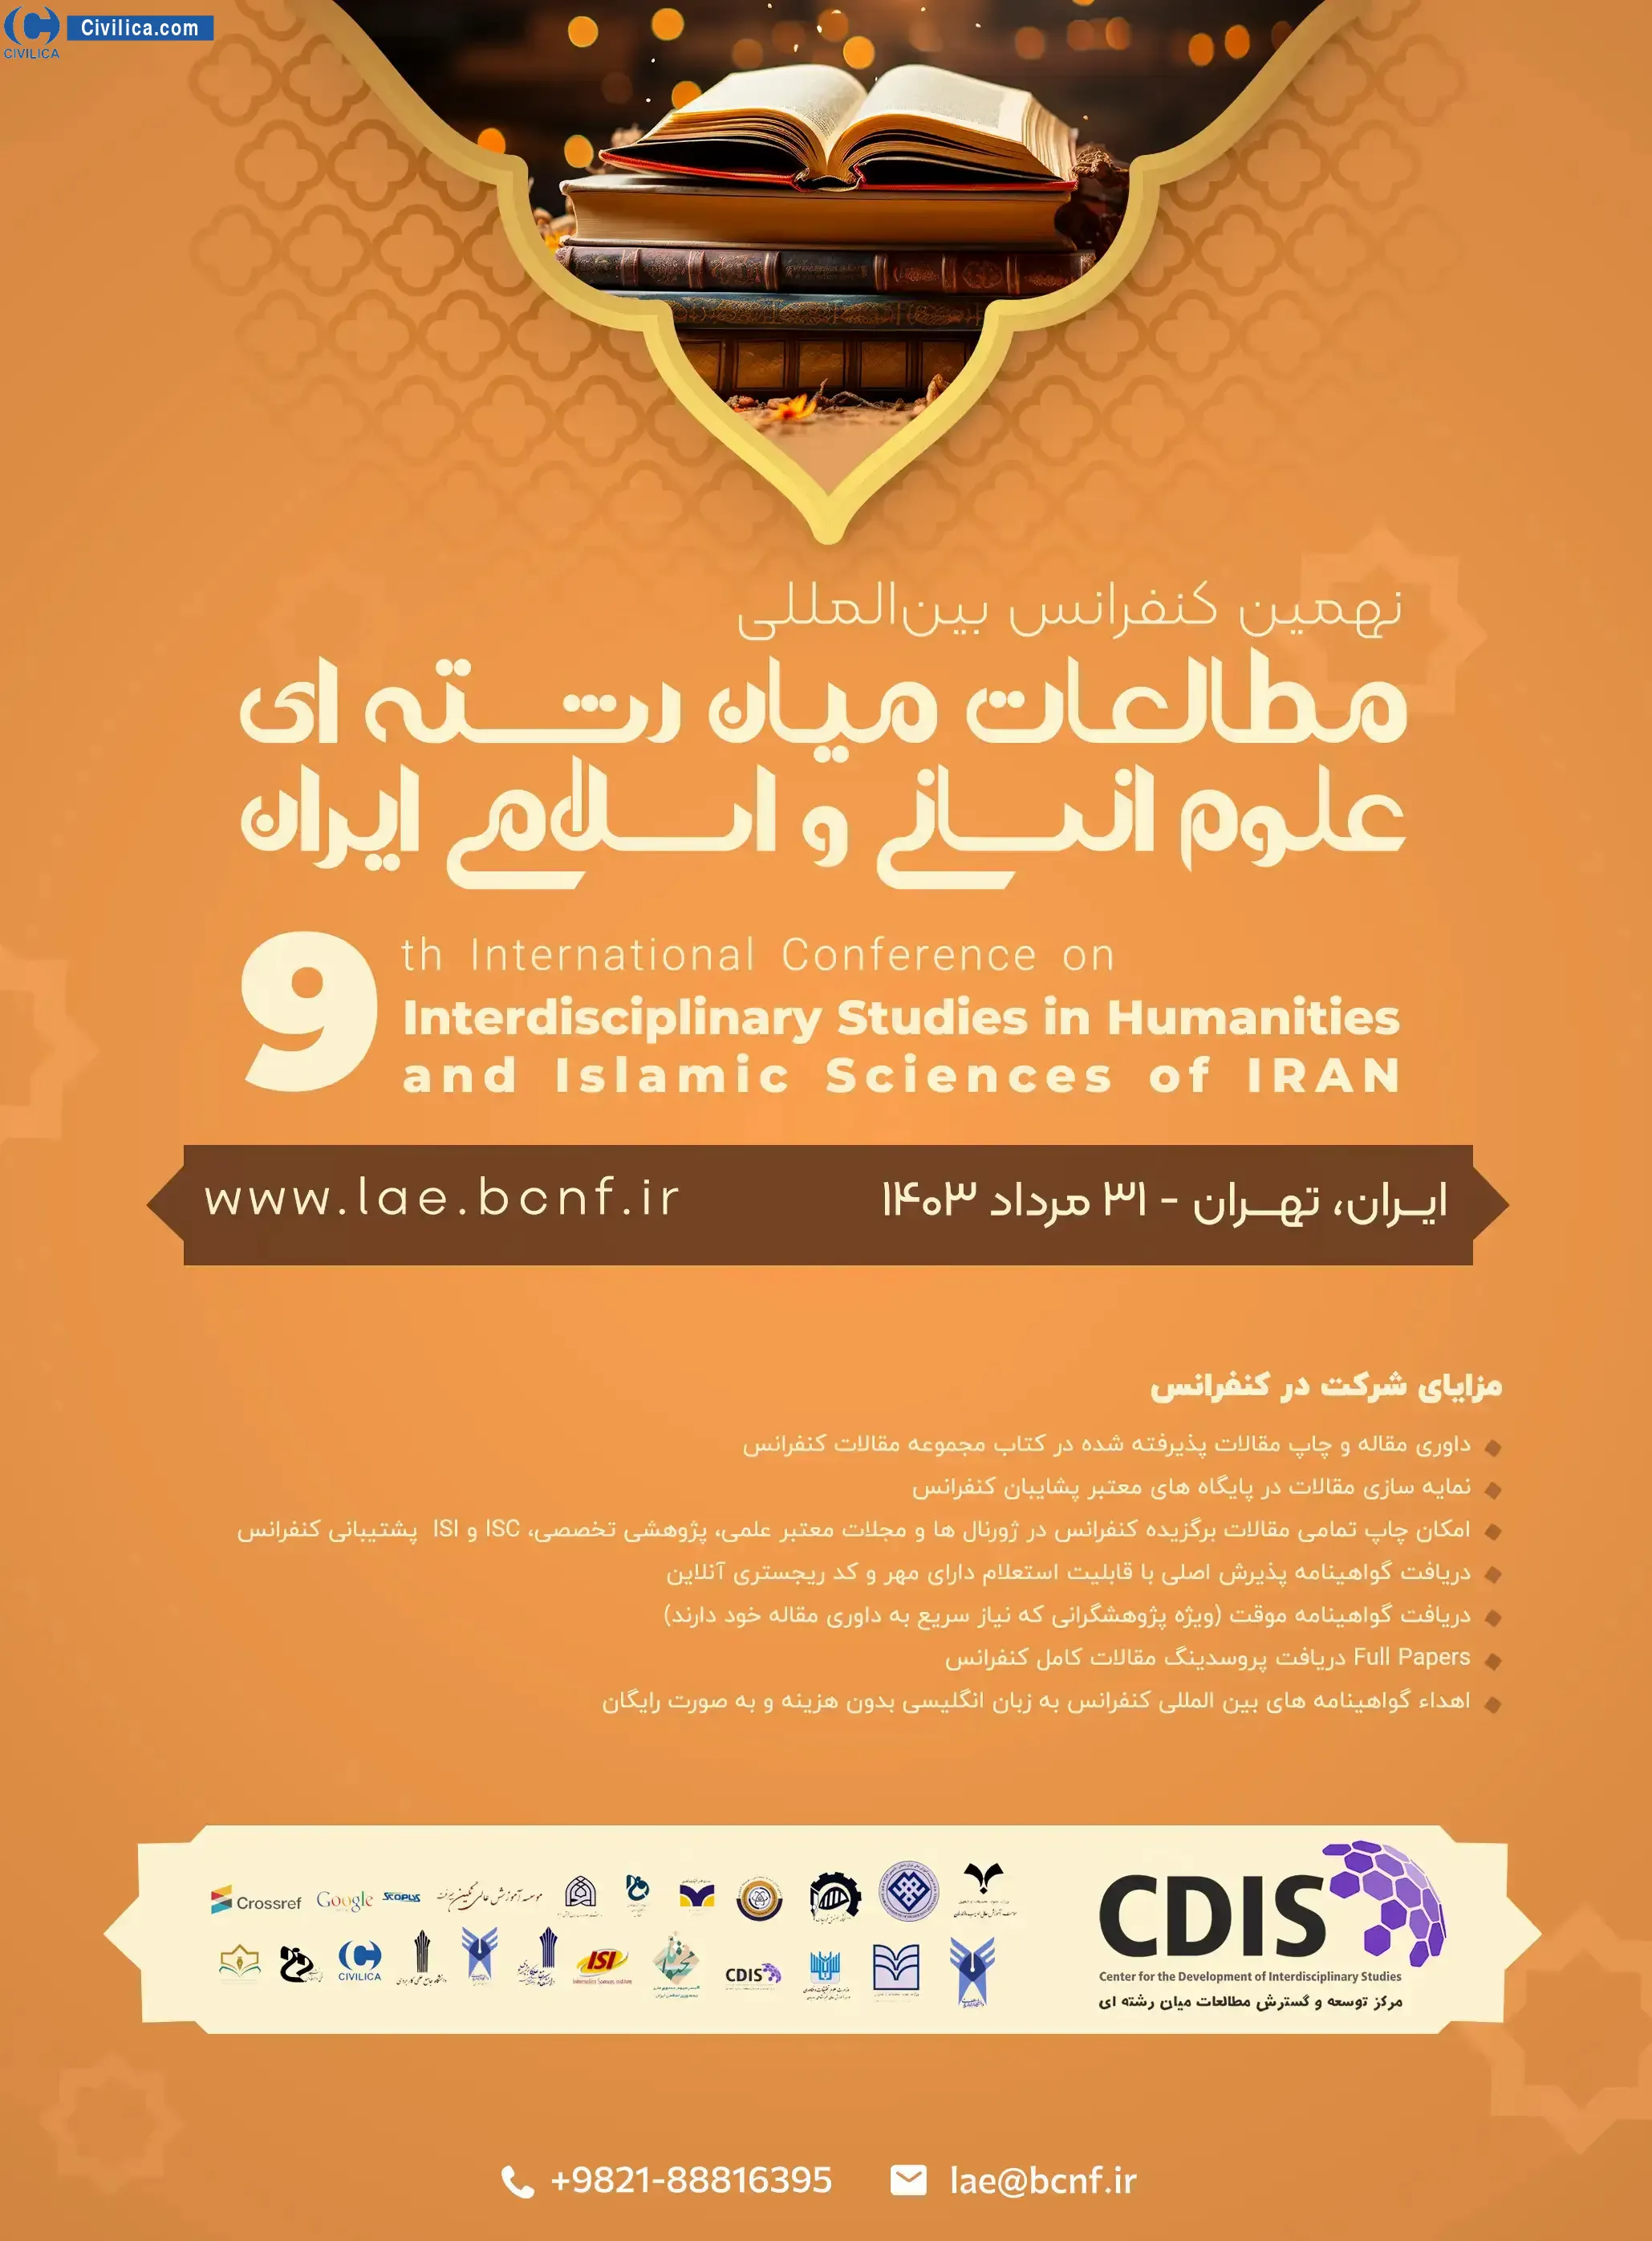 نهمین کنفرانس بین المللی مطالعات میان رشته ای علوم انسانی و اسلامی ایران